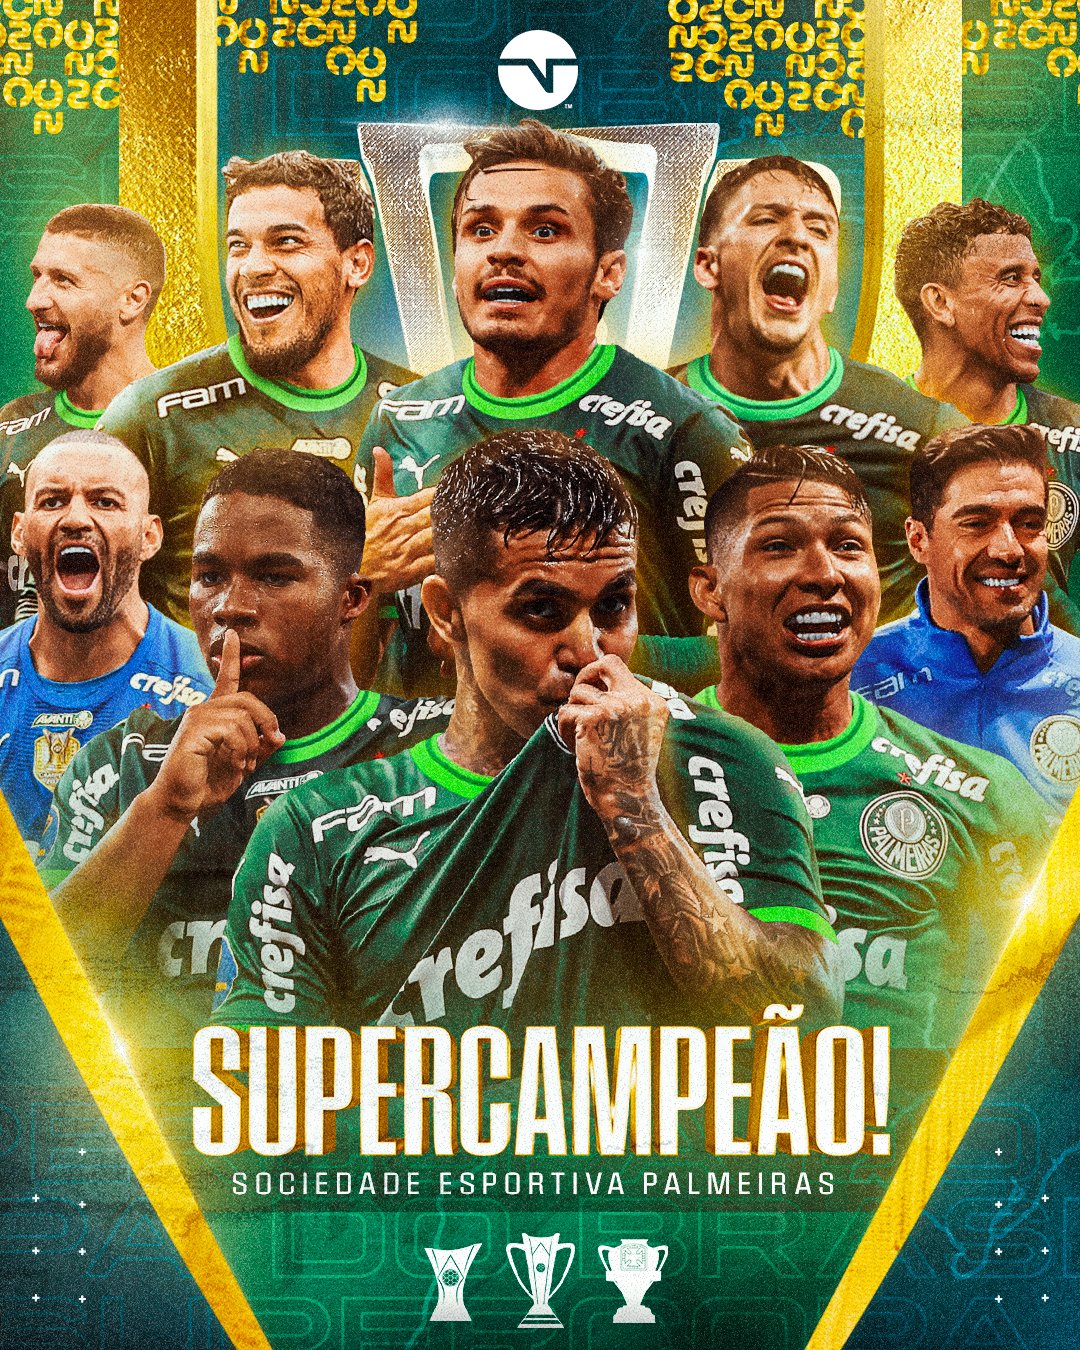 Supercopa 23 Palmeiras 4×3 Flamengo: É CAMPEÃO!!!! - 3VV